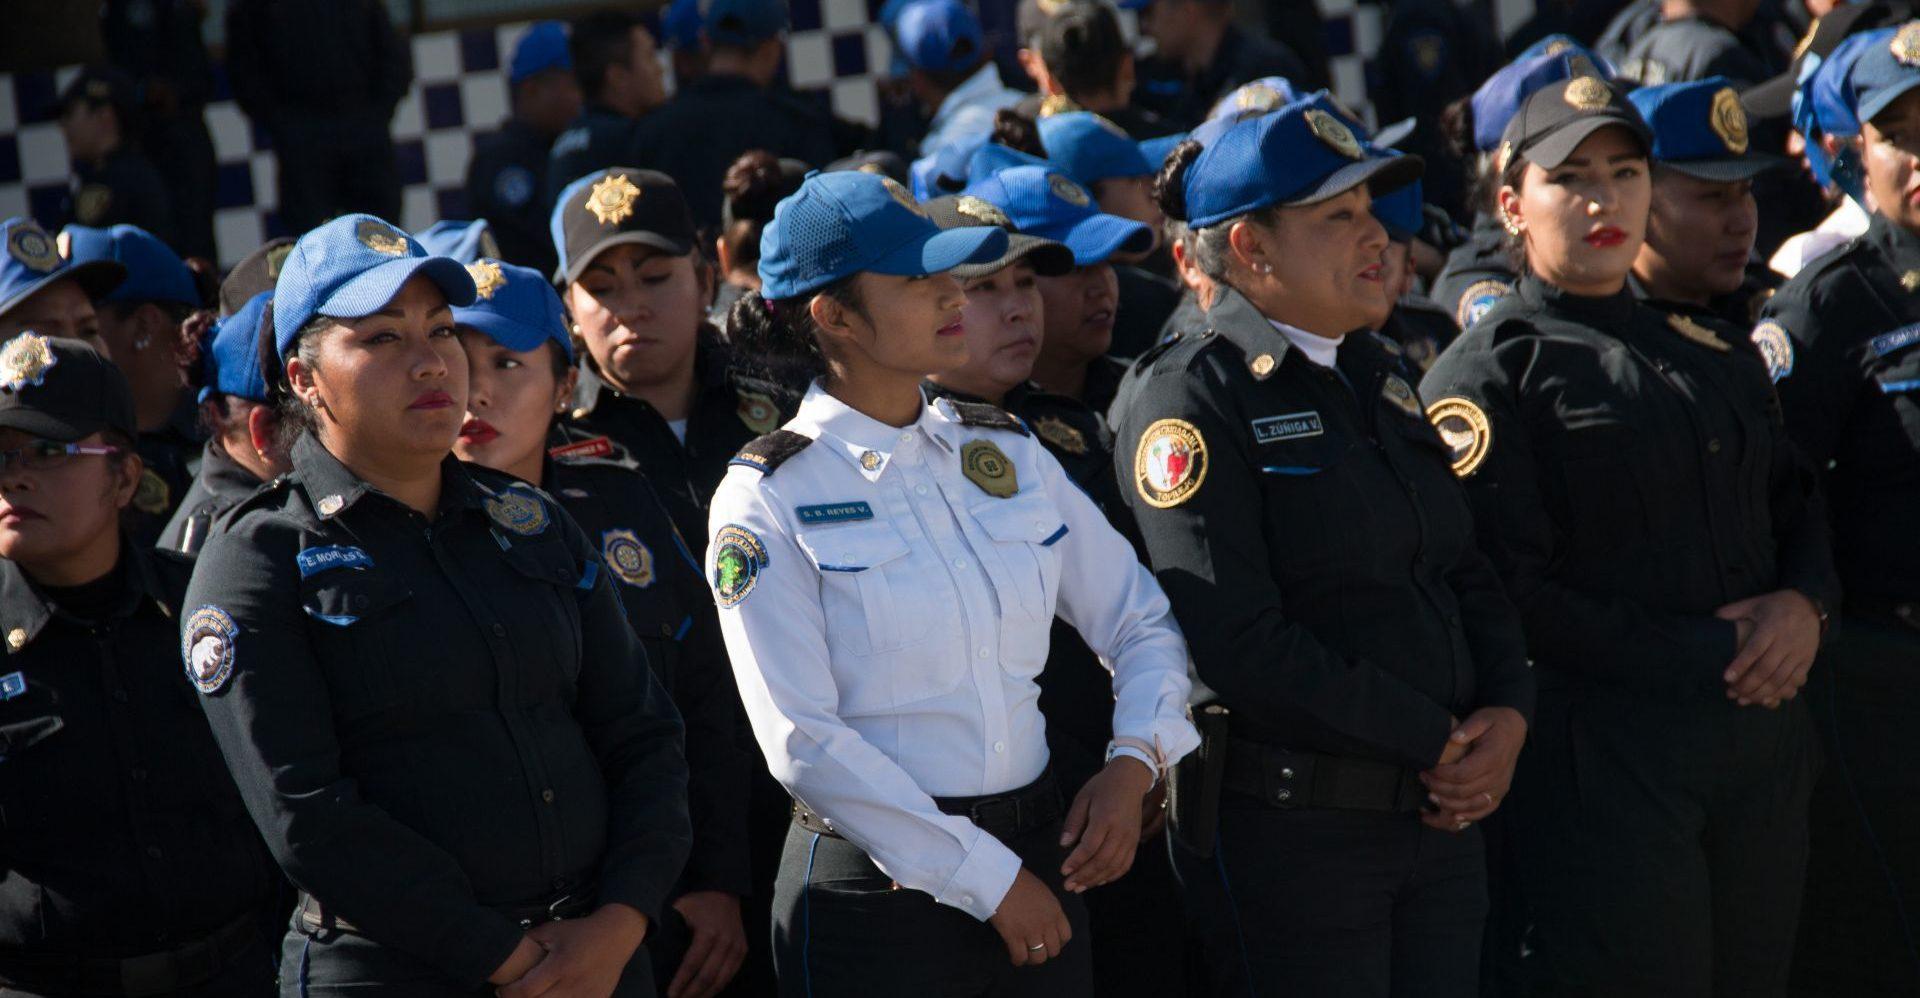 Discriminación, agresiones y acoso: Mujeres policías sufren malos tratos dentro de sus espacios de trabajo